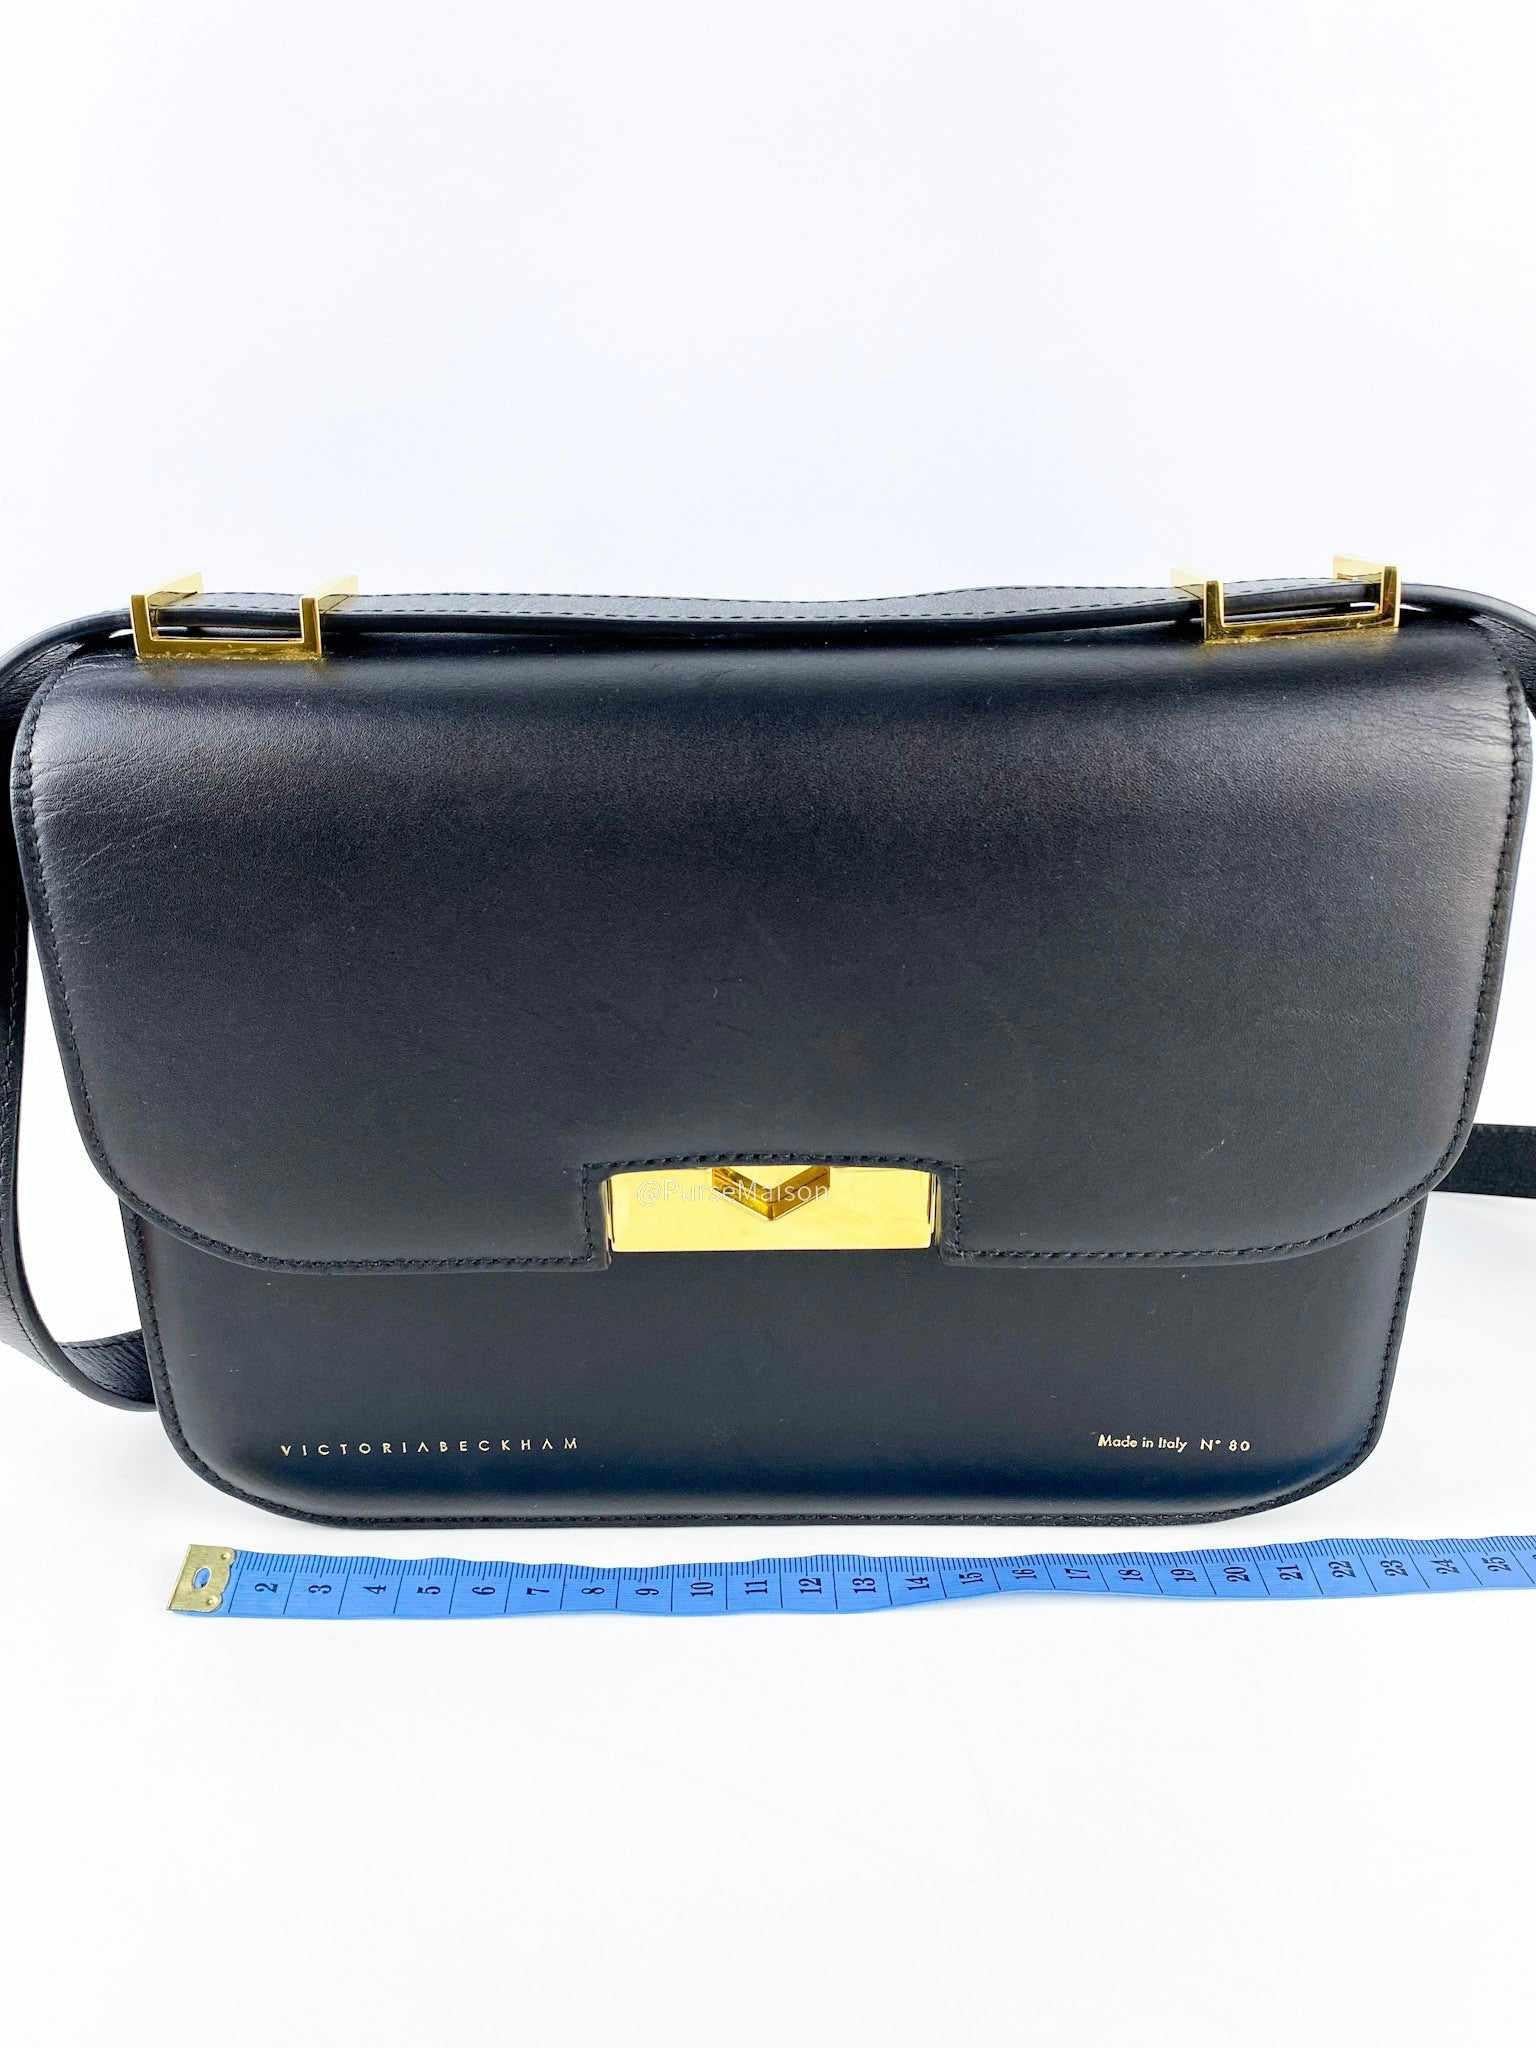 Victoria Beckham Eva Black Calfskin Leather Shoulder Bag